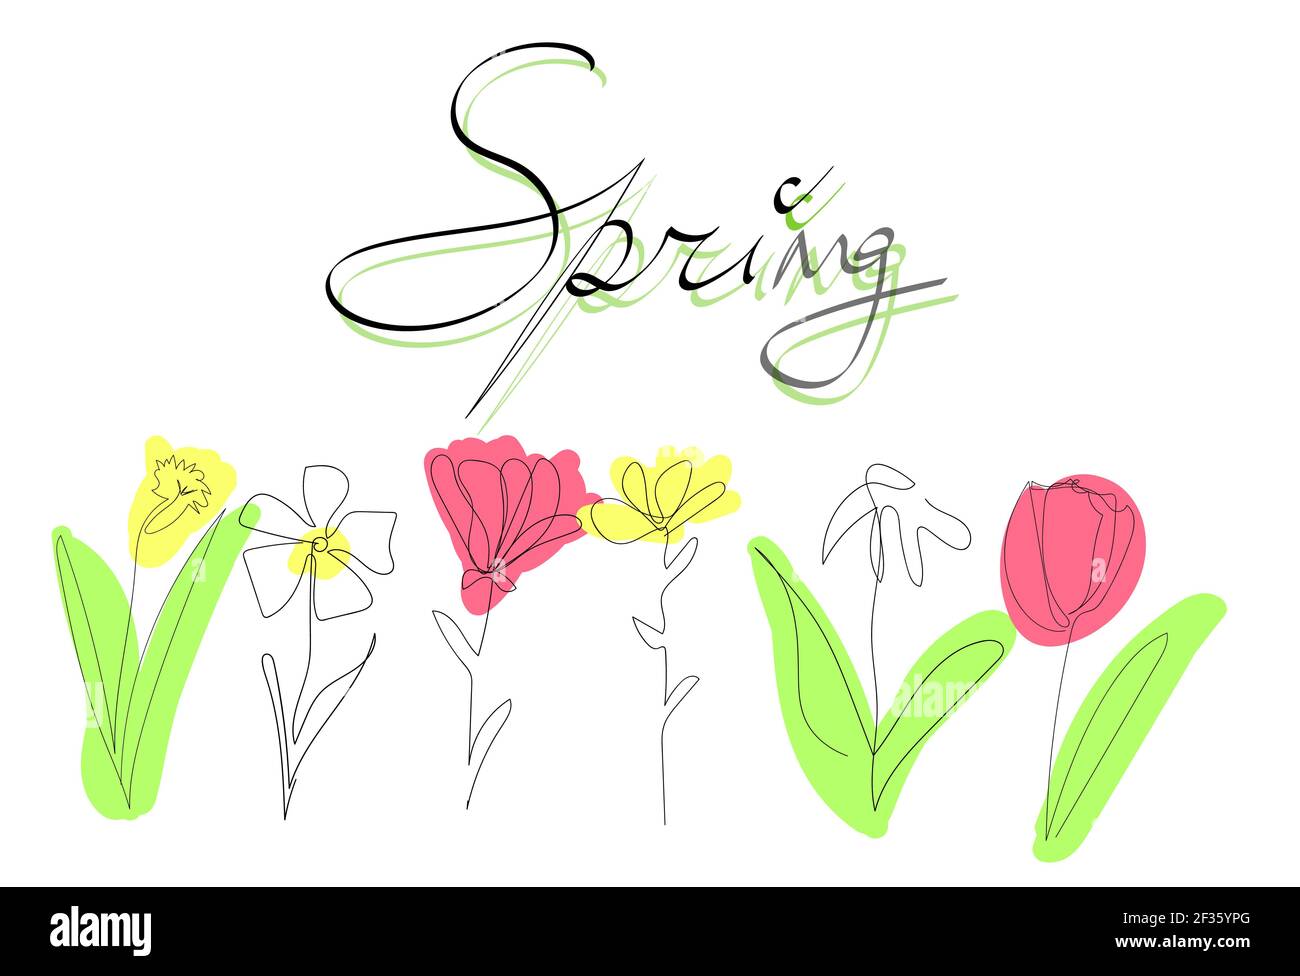 Postkarte Frühling Blumen eine Linie. Handzeichnung minimal farbigen Vektor-Illustration Stock Vektor